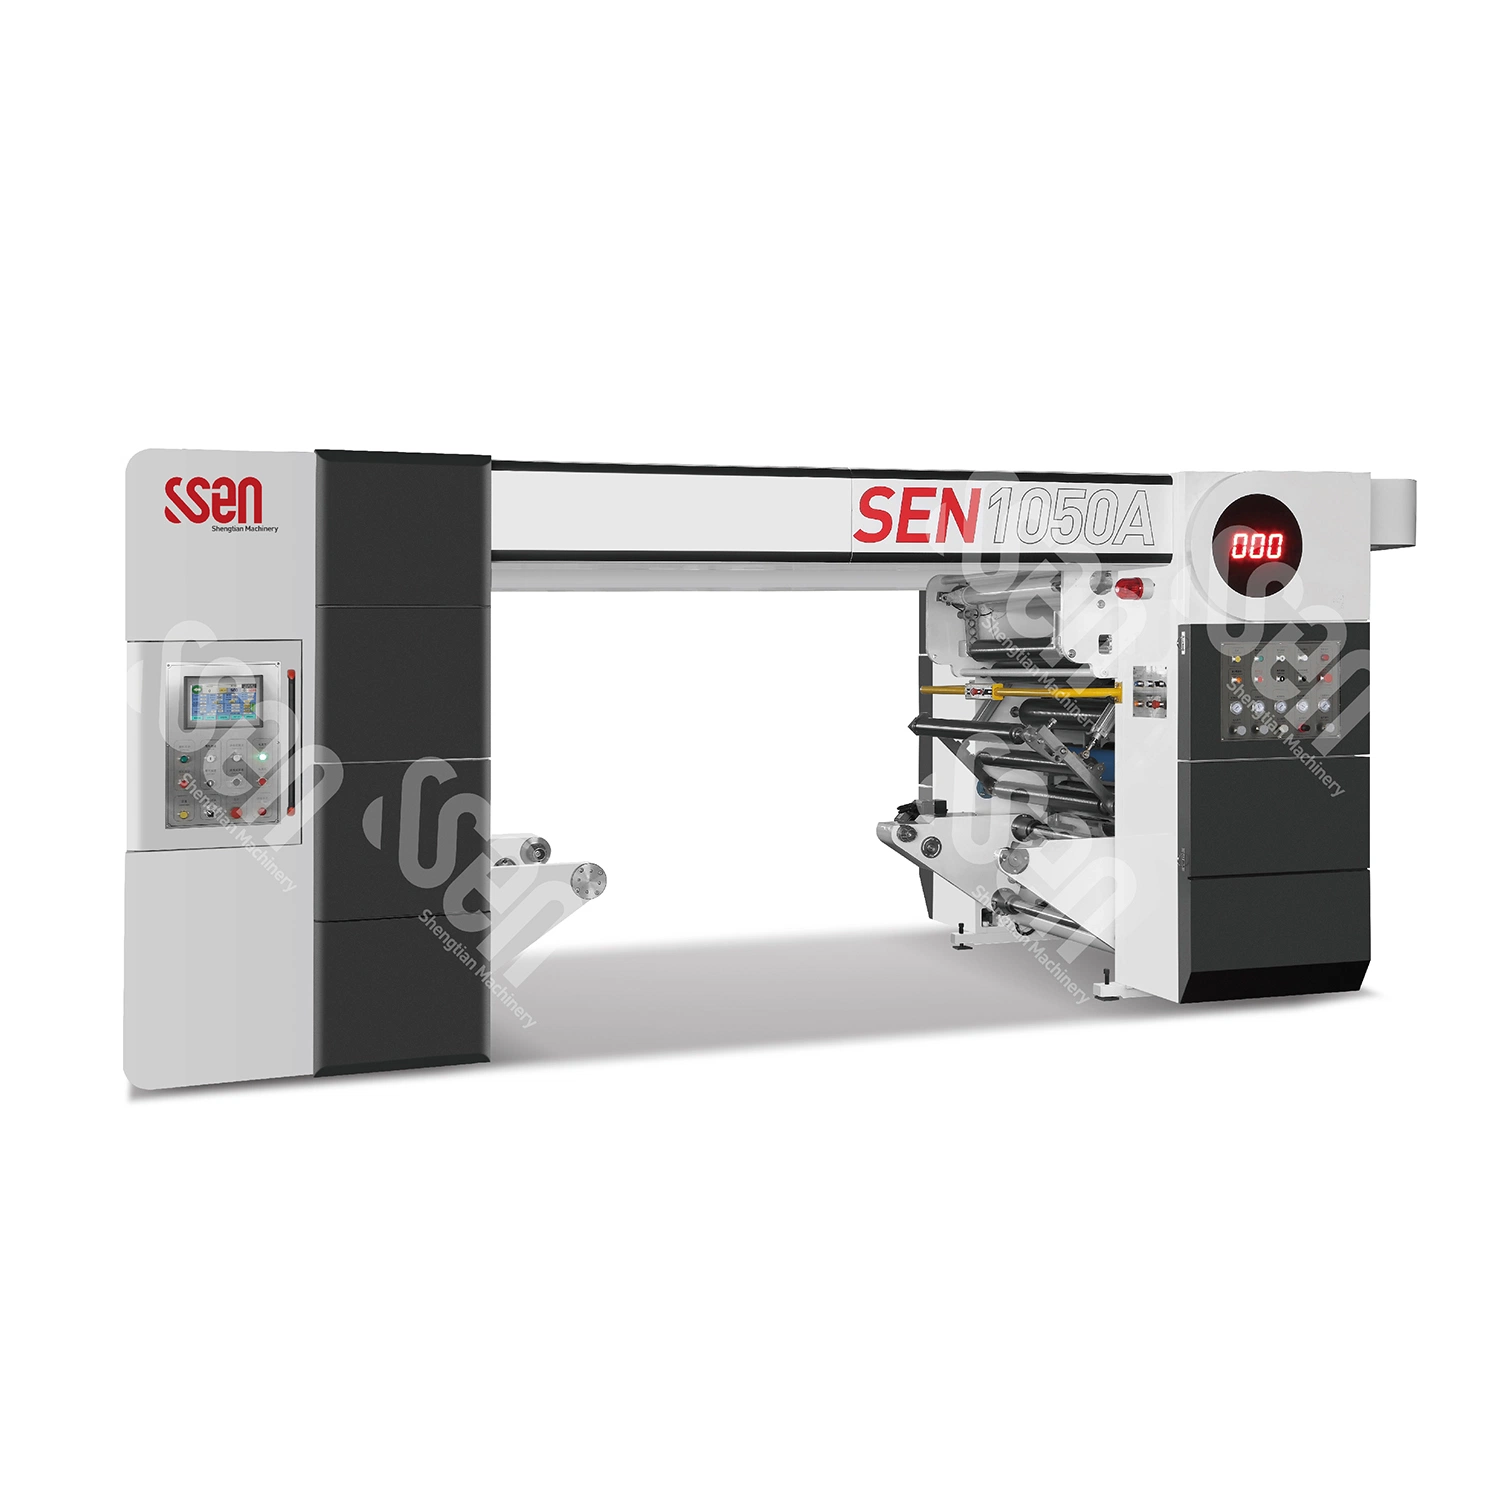 Disolvente marca Ssen menos máquina laminadora de film plástico rollos de papel